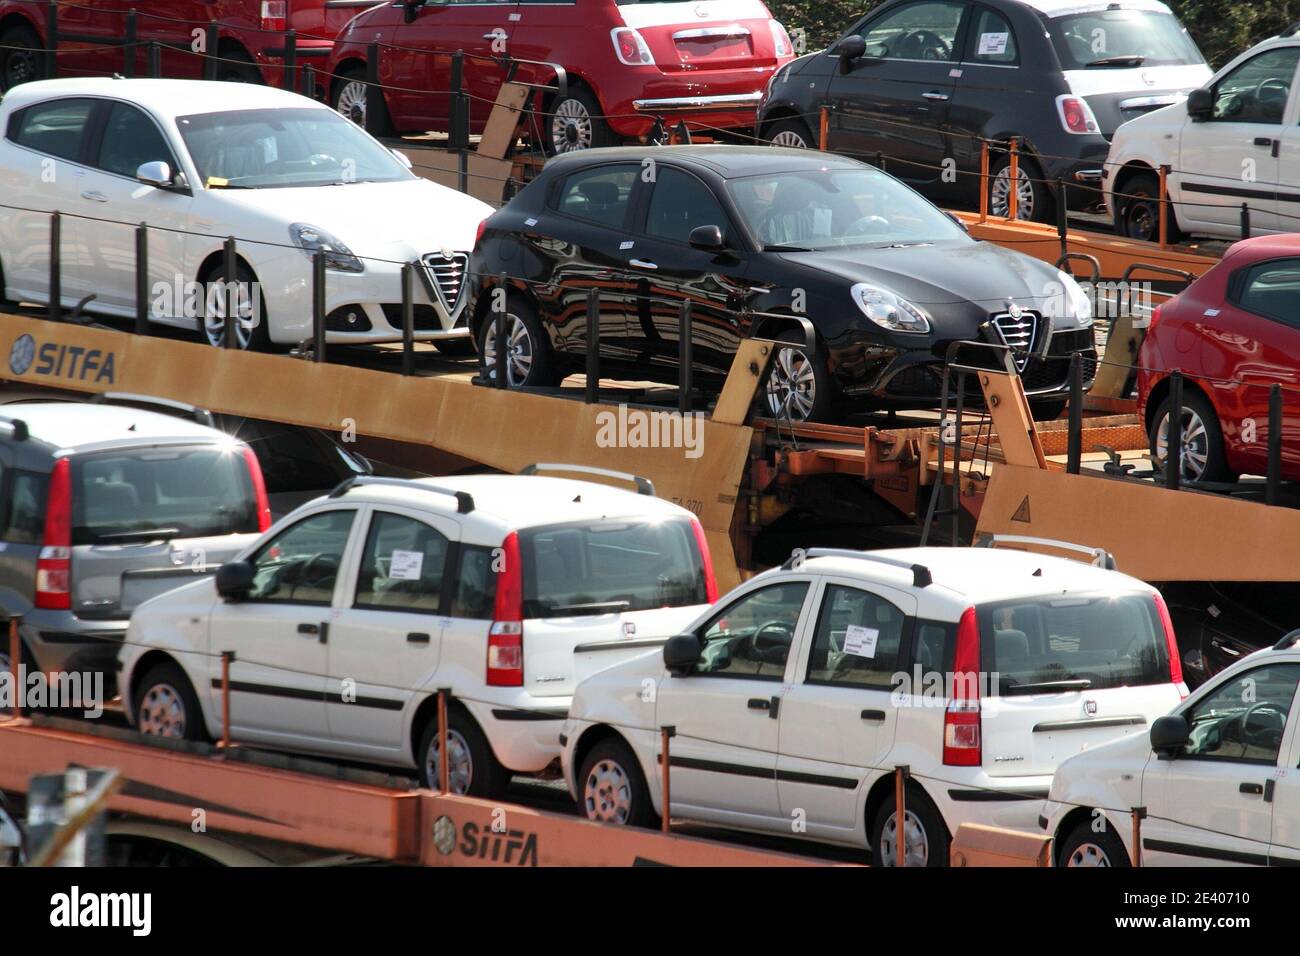 Cassino - Italia - 24 marzo 2013: Le Fiat Panda e le Alfa Romeo prodotte nello stabilimento di Cassino nel parcheggio auto pronte per essere distribuite Stock Photo